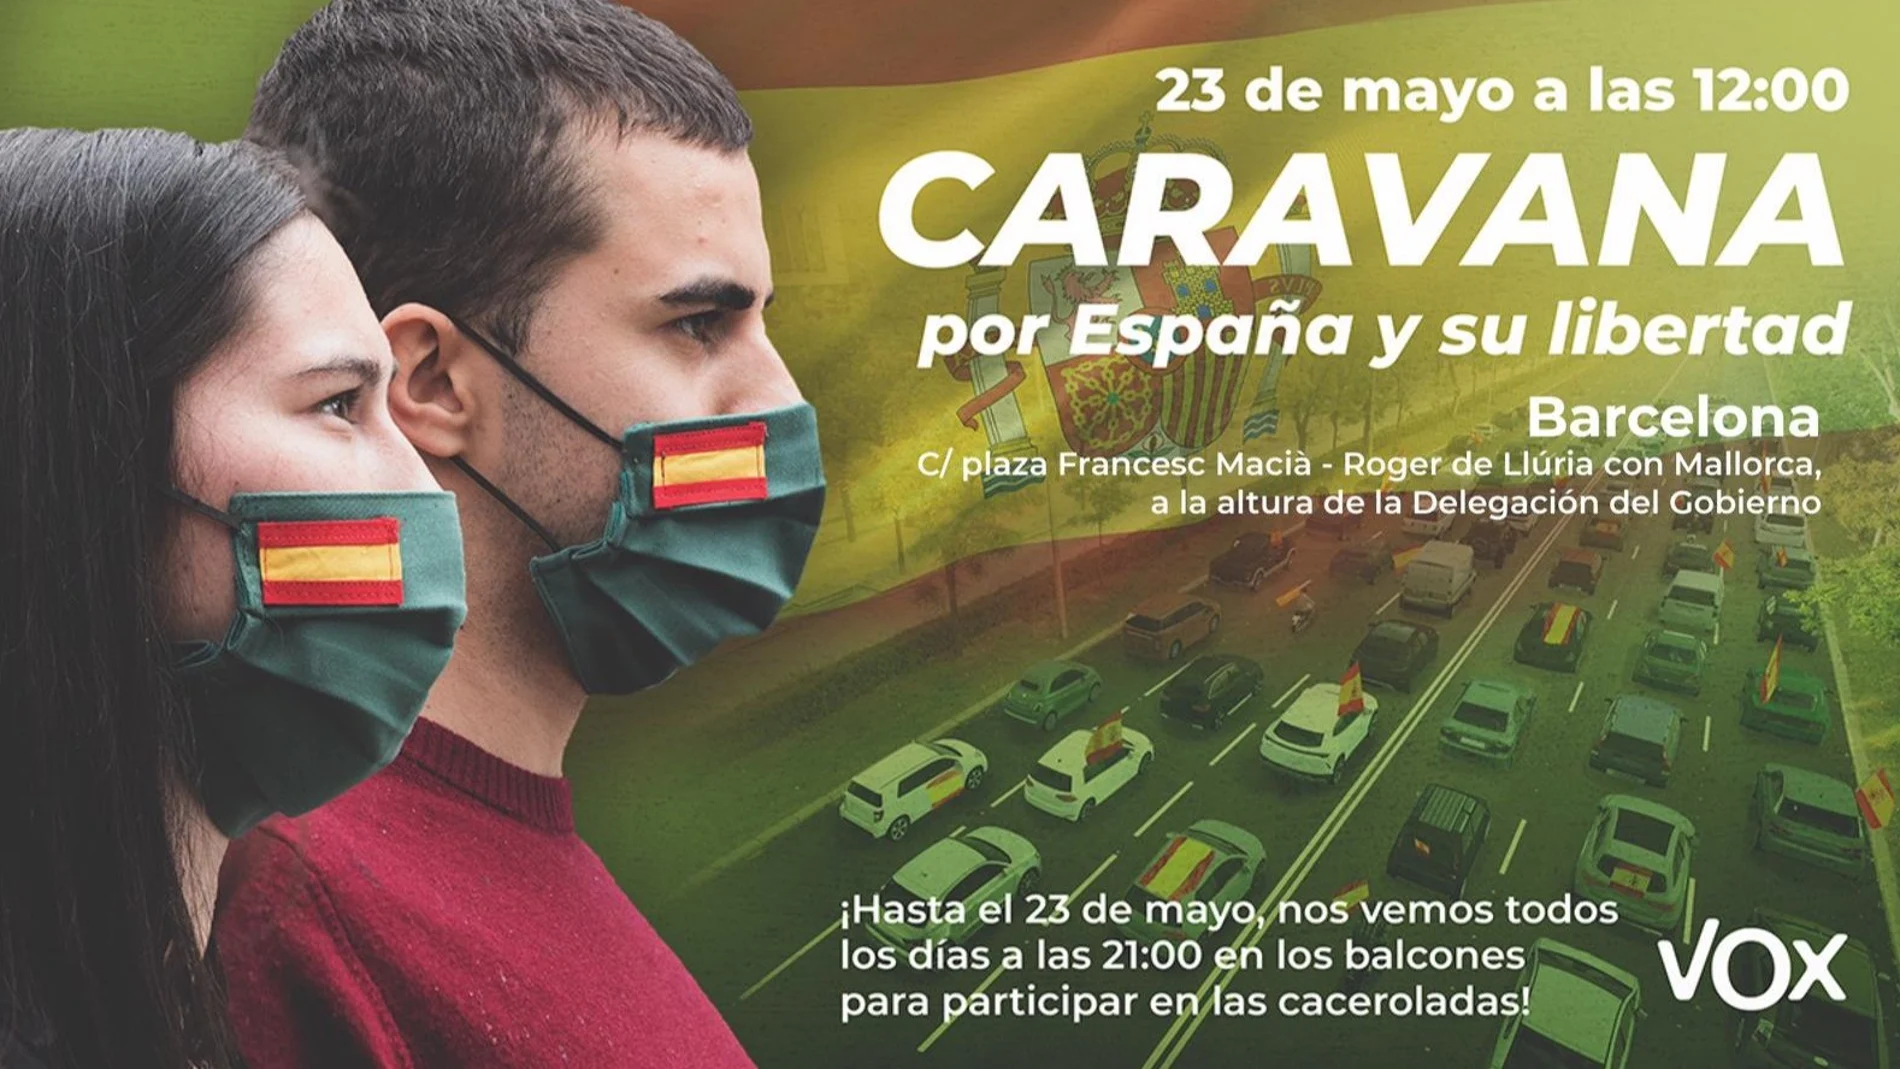 Imagen del cartel de la manifestación de mañana contra el Gobierno en Barcelona